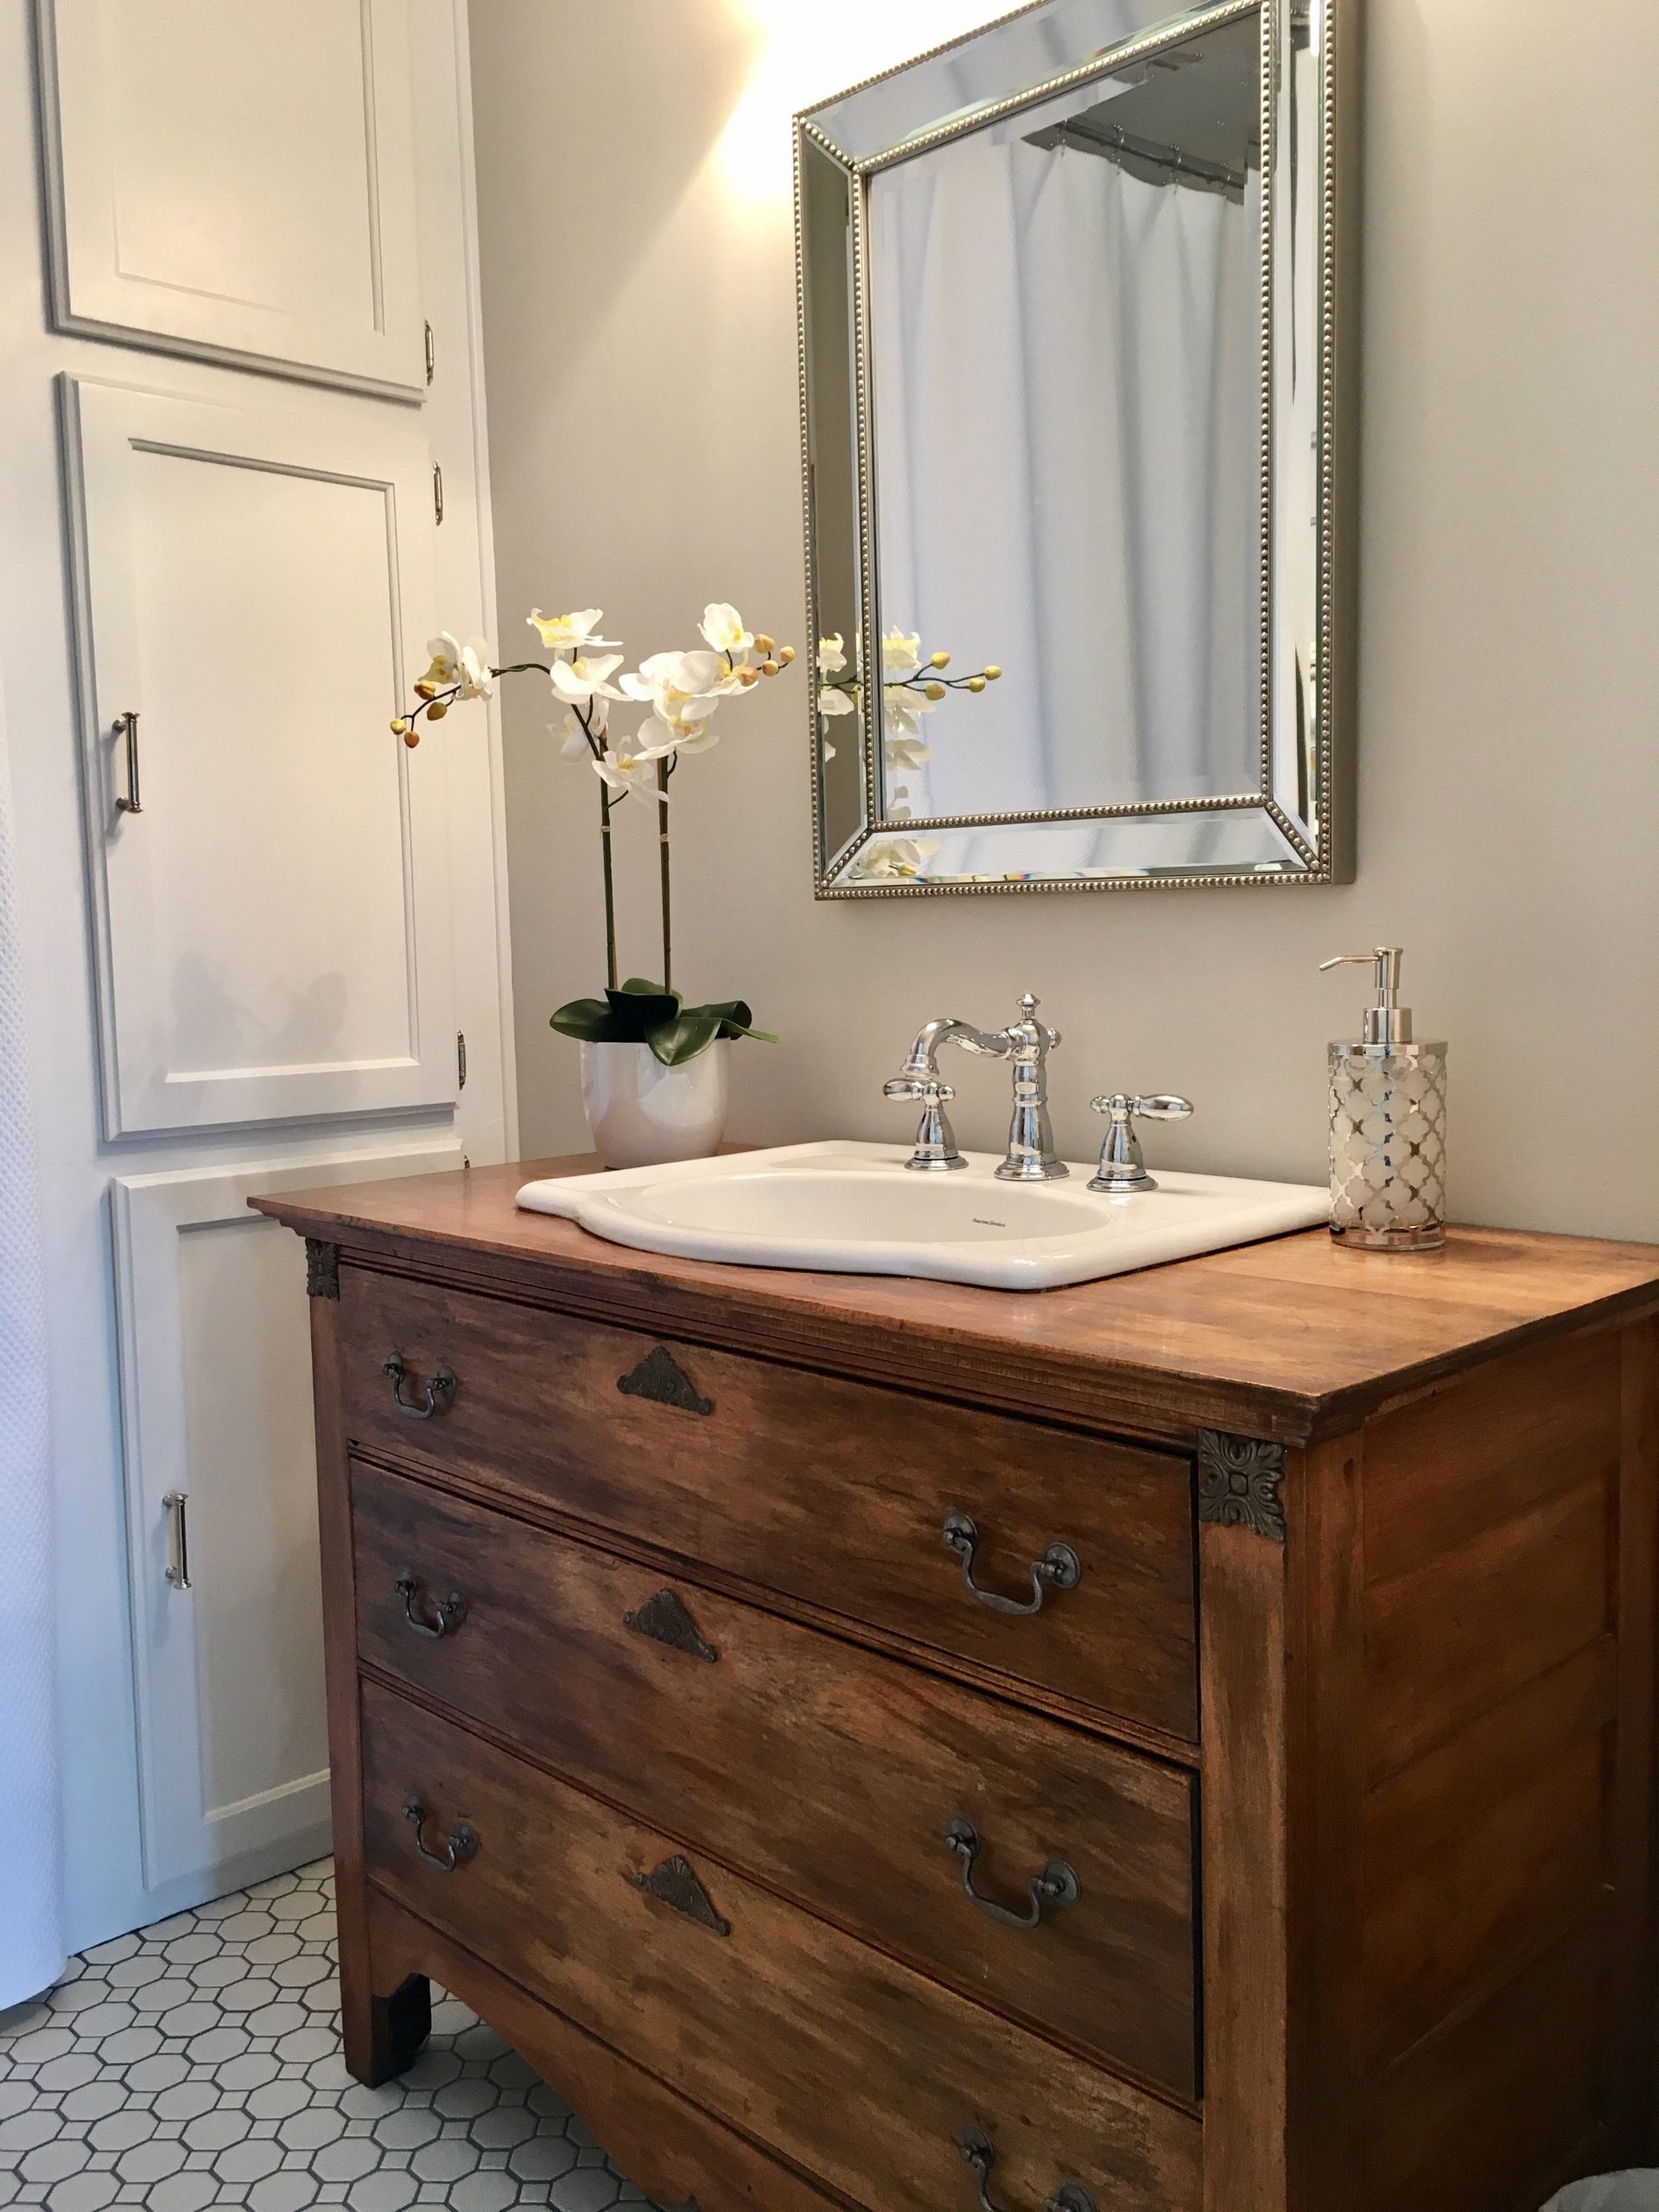 20 Dresser Bathroom Vanity Magzhouse, Bathroom Vanities That Look Like Dressers